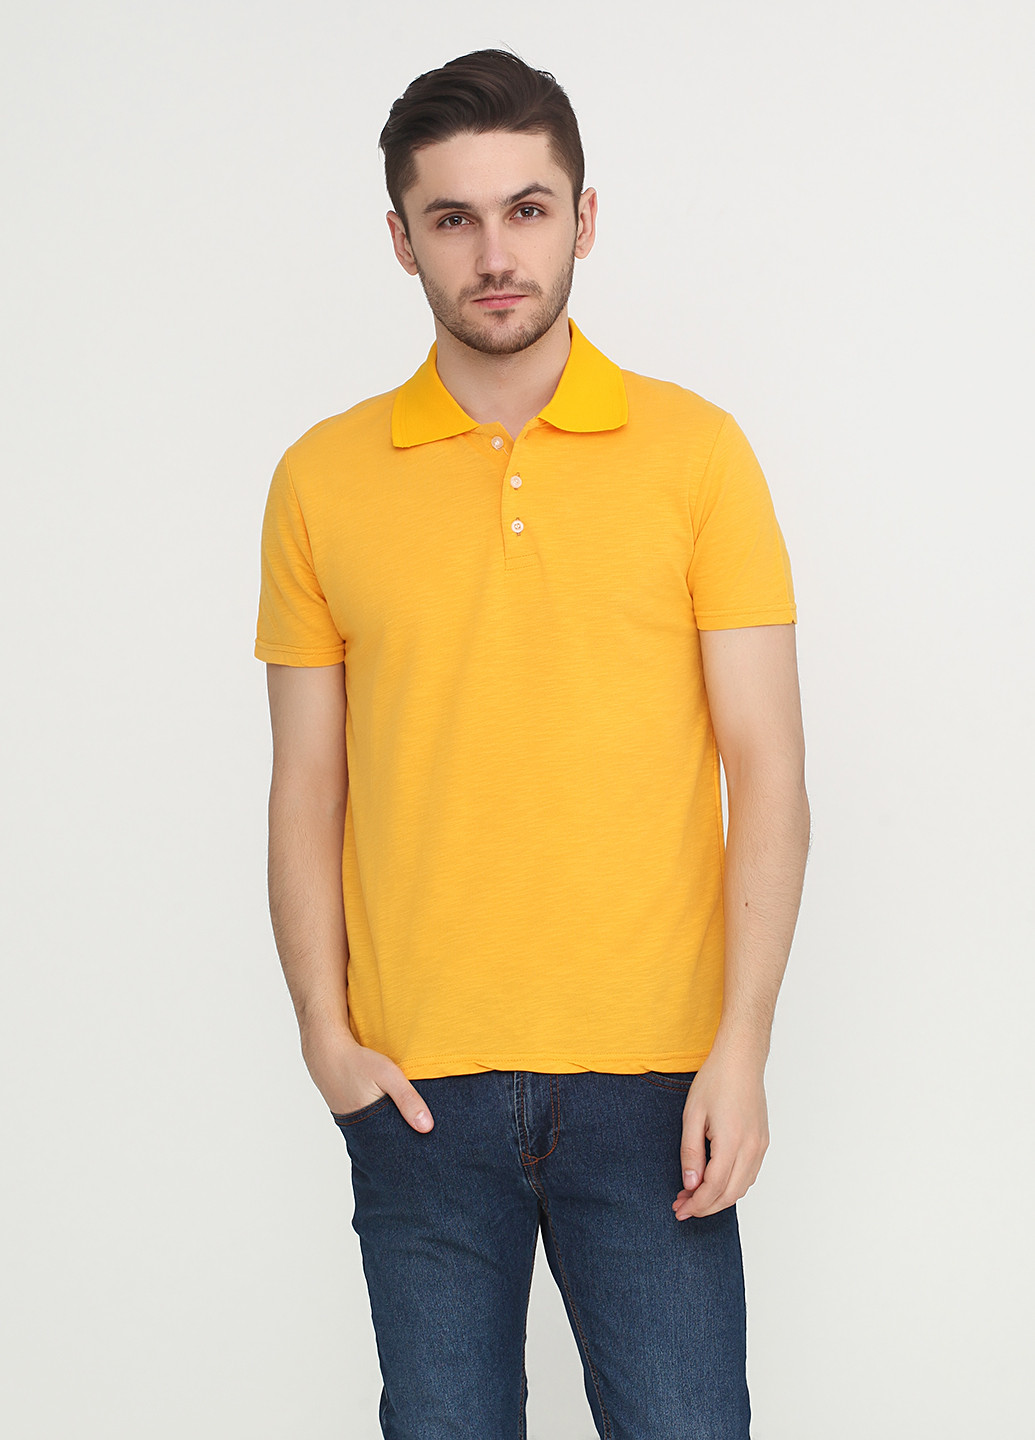 Желтая футболка-поло для мужчин Chiarotex с логотипом